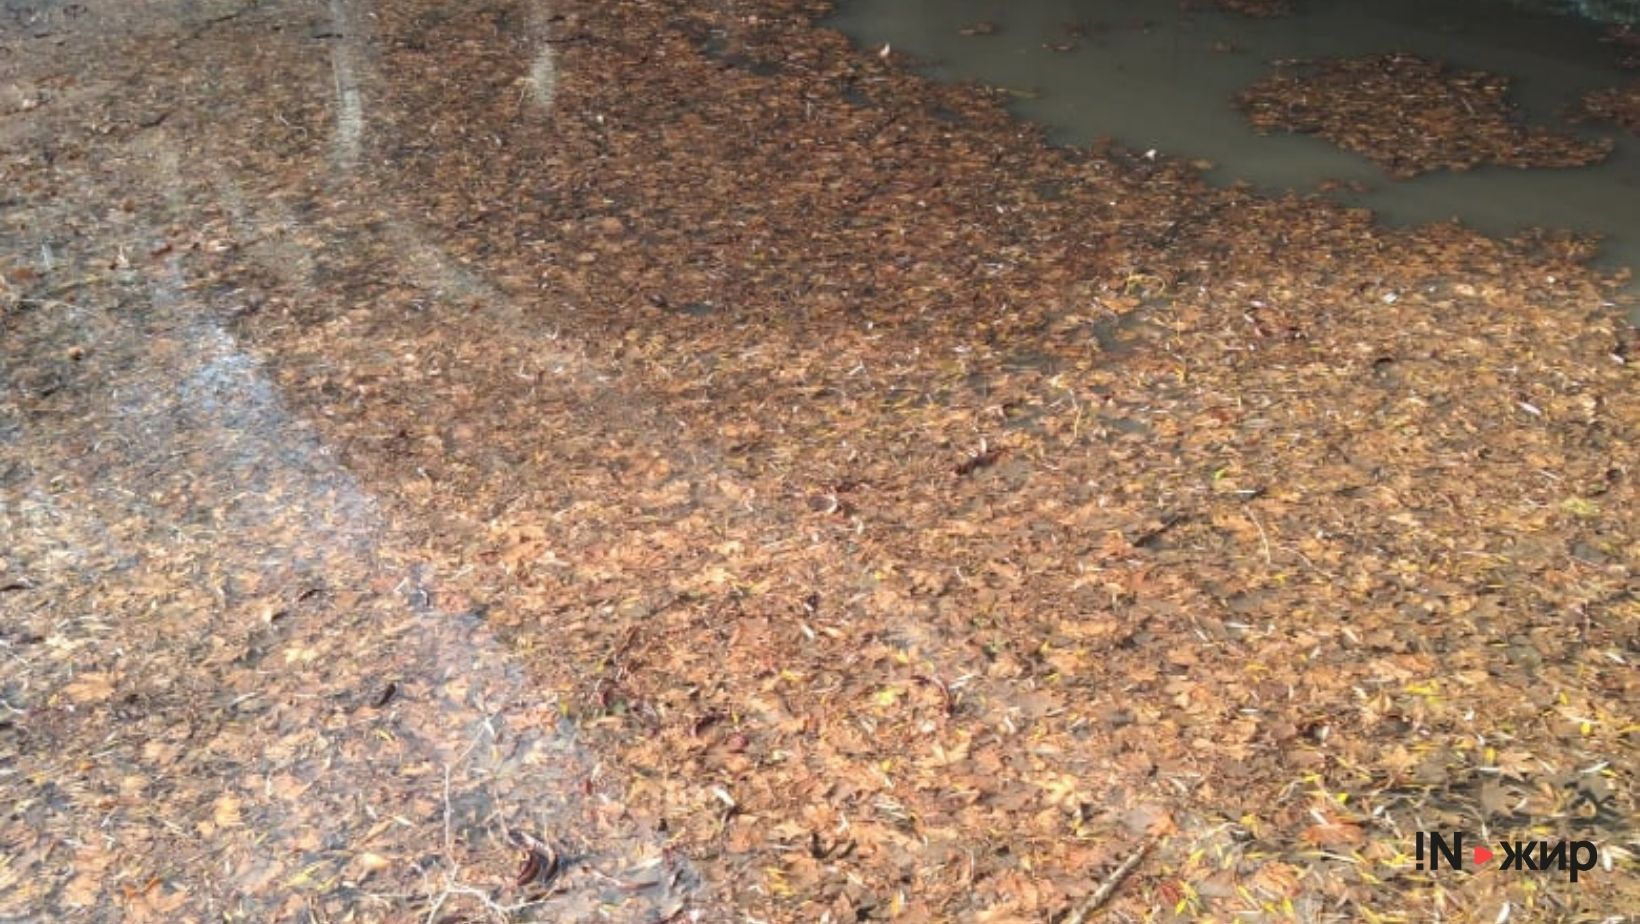 Салгир после ураганного ветра. Горы листьев, веток и мусора.&nbsp;Фото: INжир media